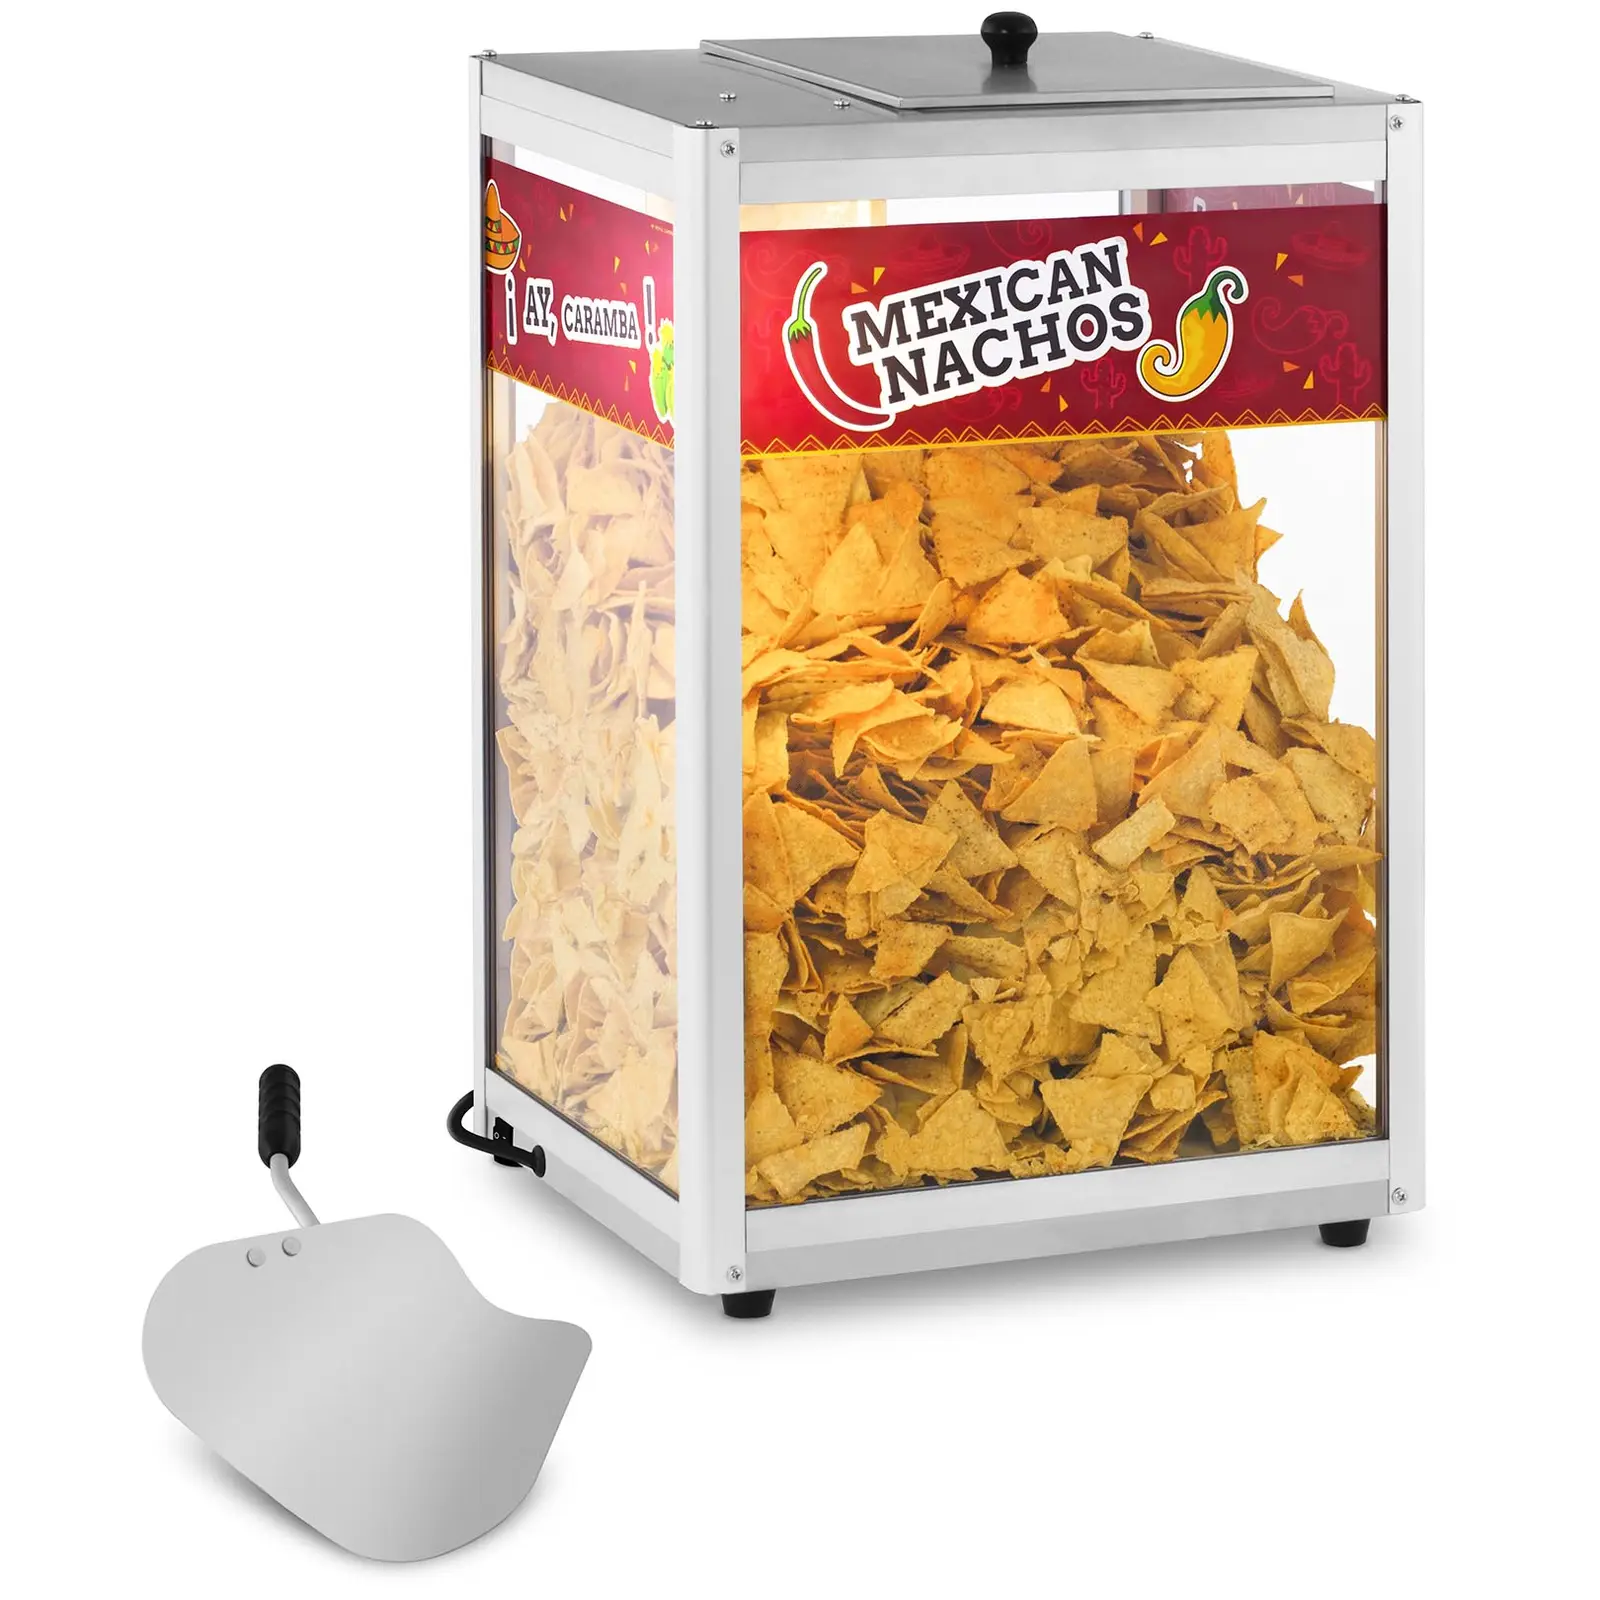 Aquecedor de nachos - 160 W